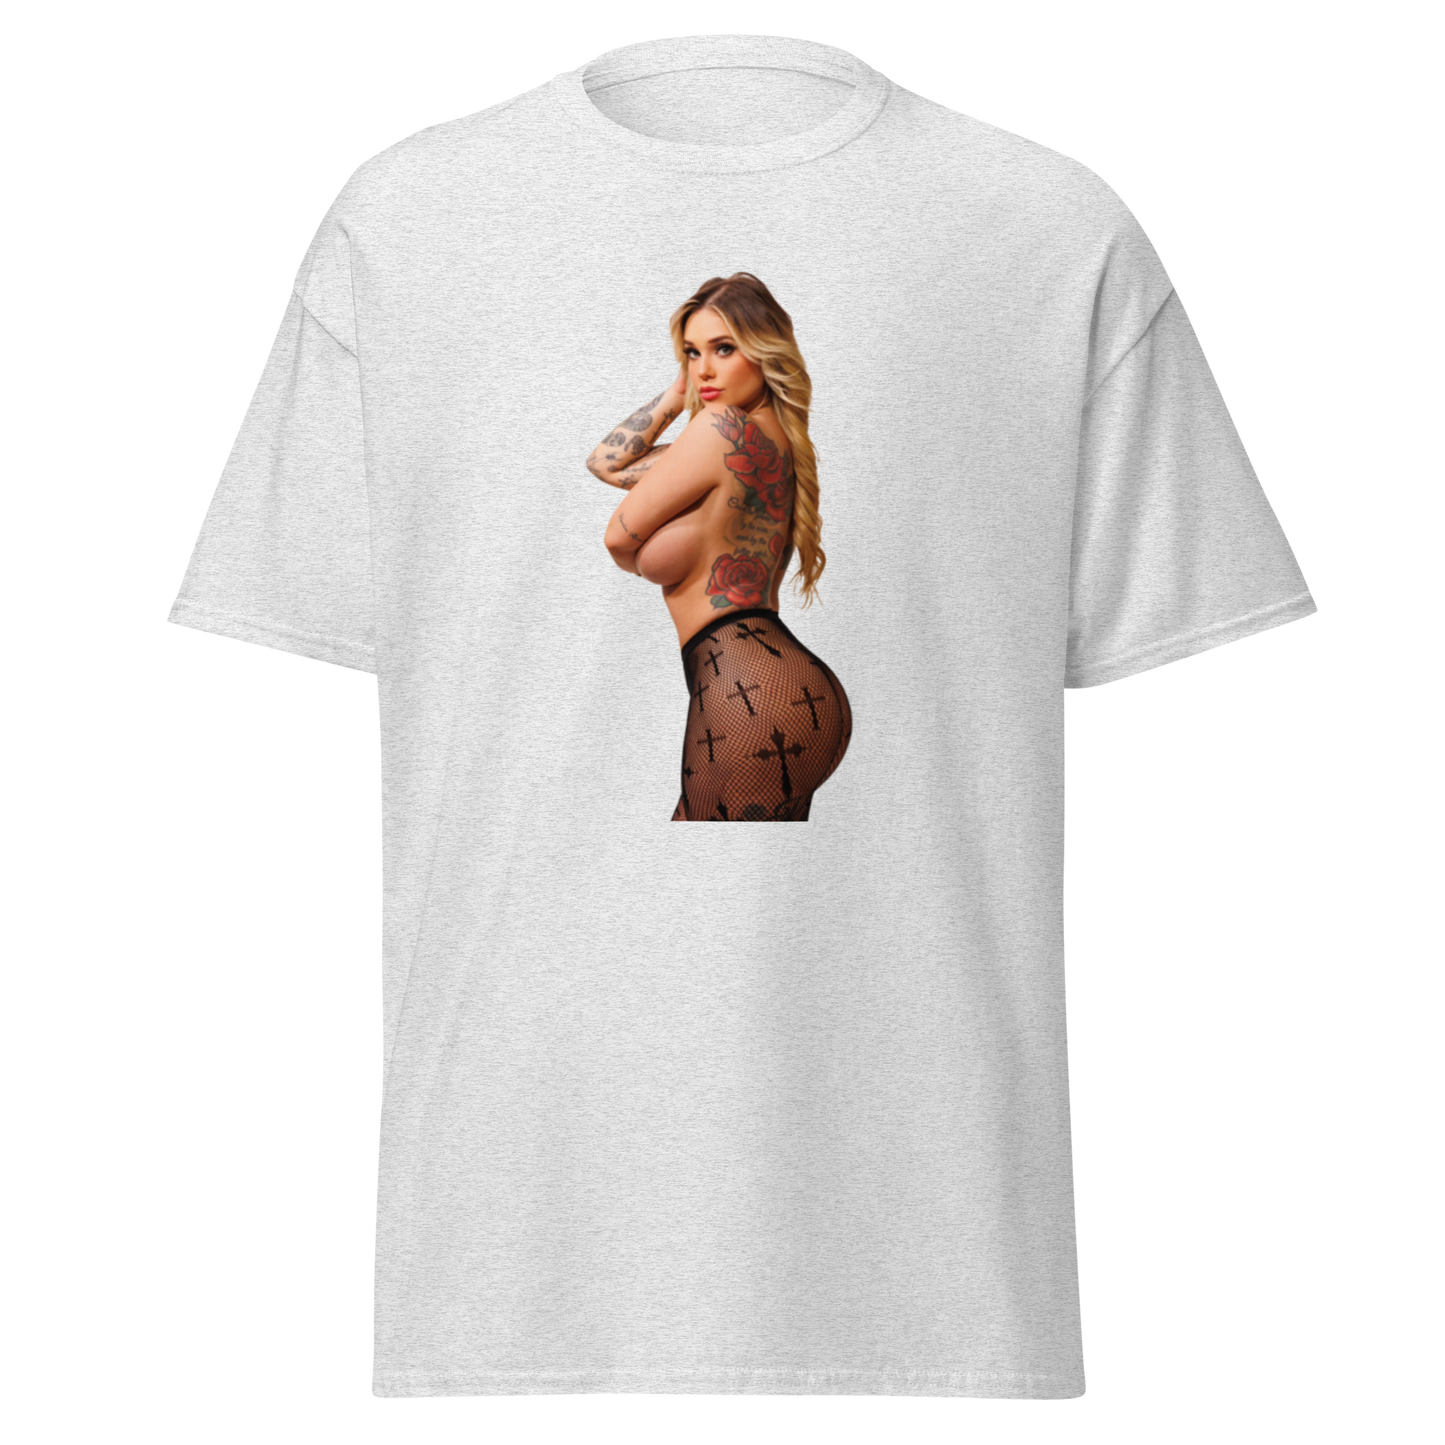 Sinful T-Shirt